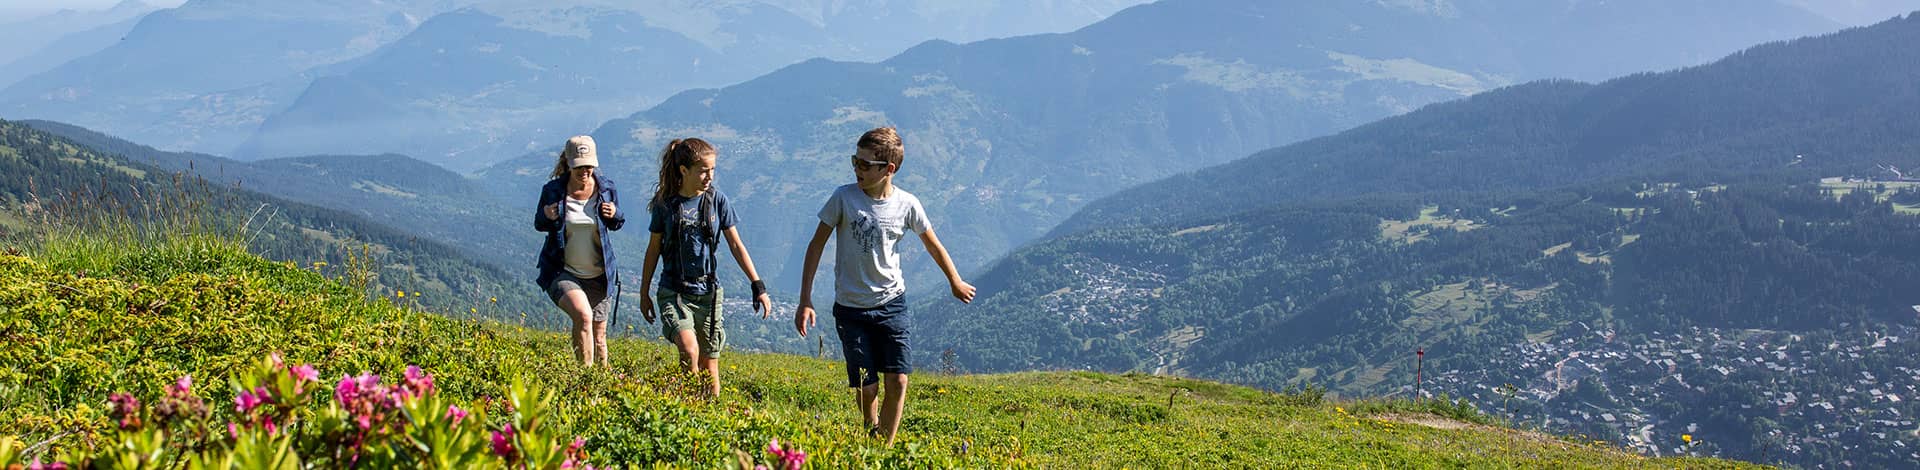 Faire une randonnée entre amis ou en famille dans les Alpes françaises dans Les 3 Vallées